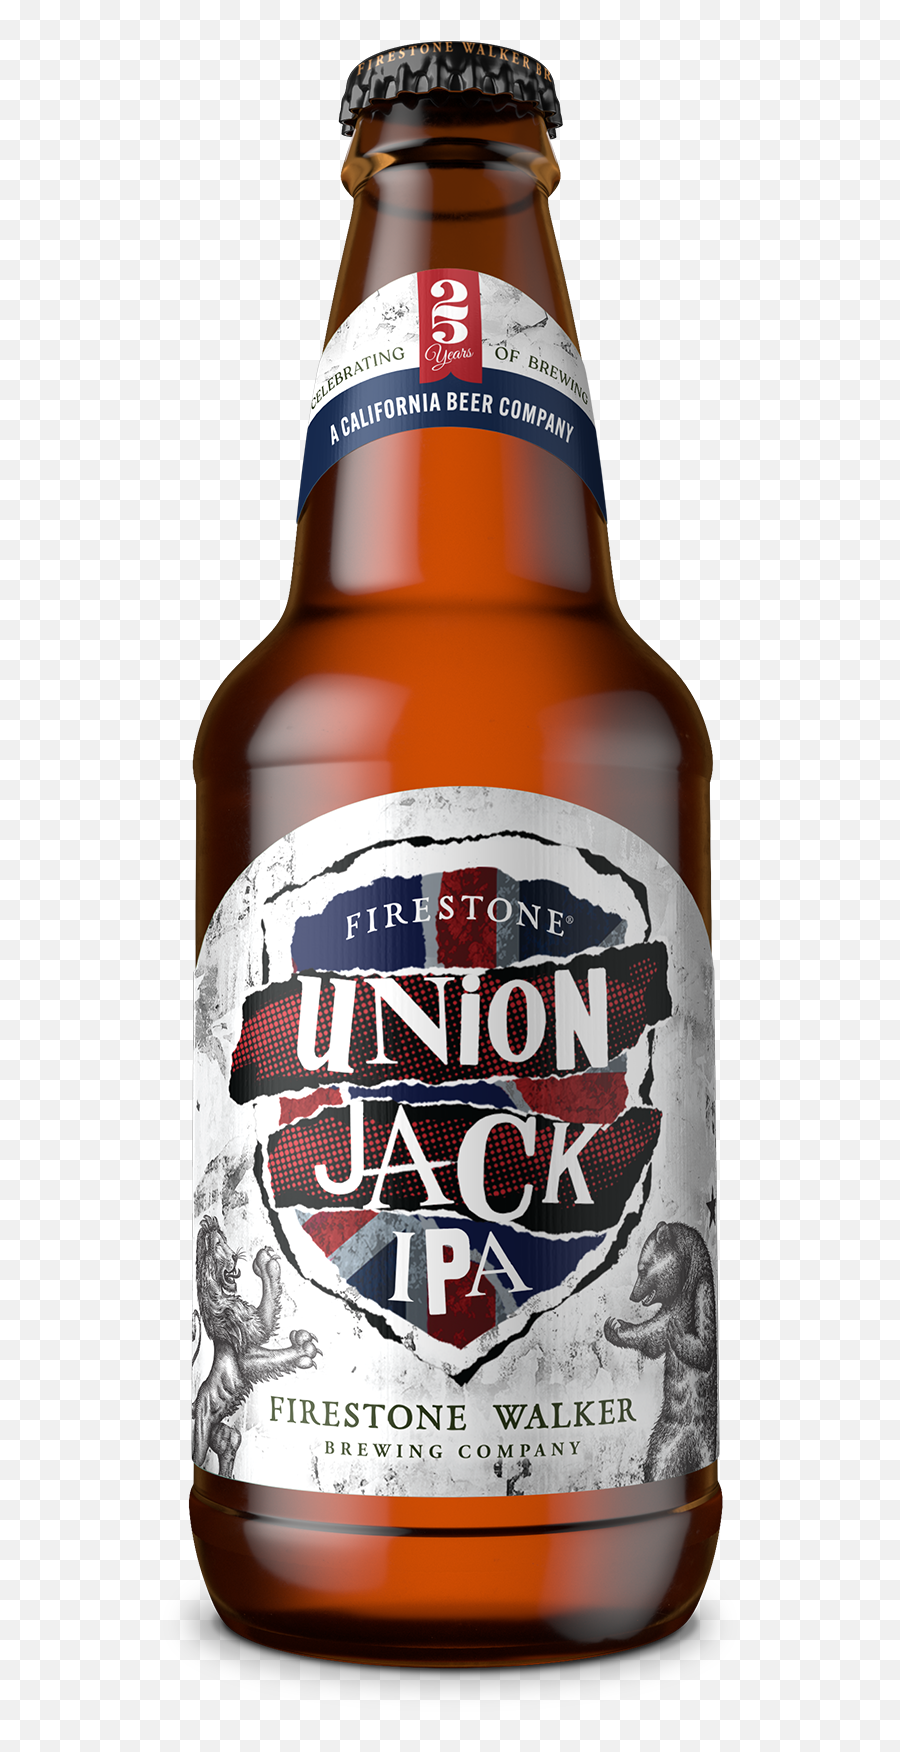 Firestone Union Jack Ipa Beer 6 Pack 12 Fl Oz Bottles Emoji,Firestone Walker Logo